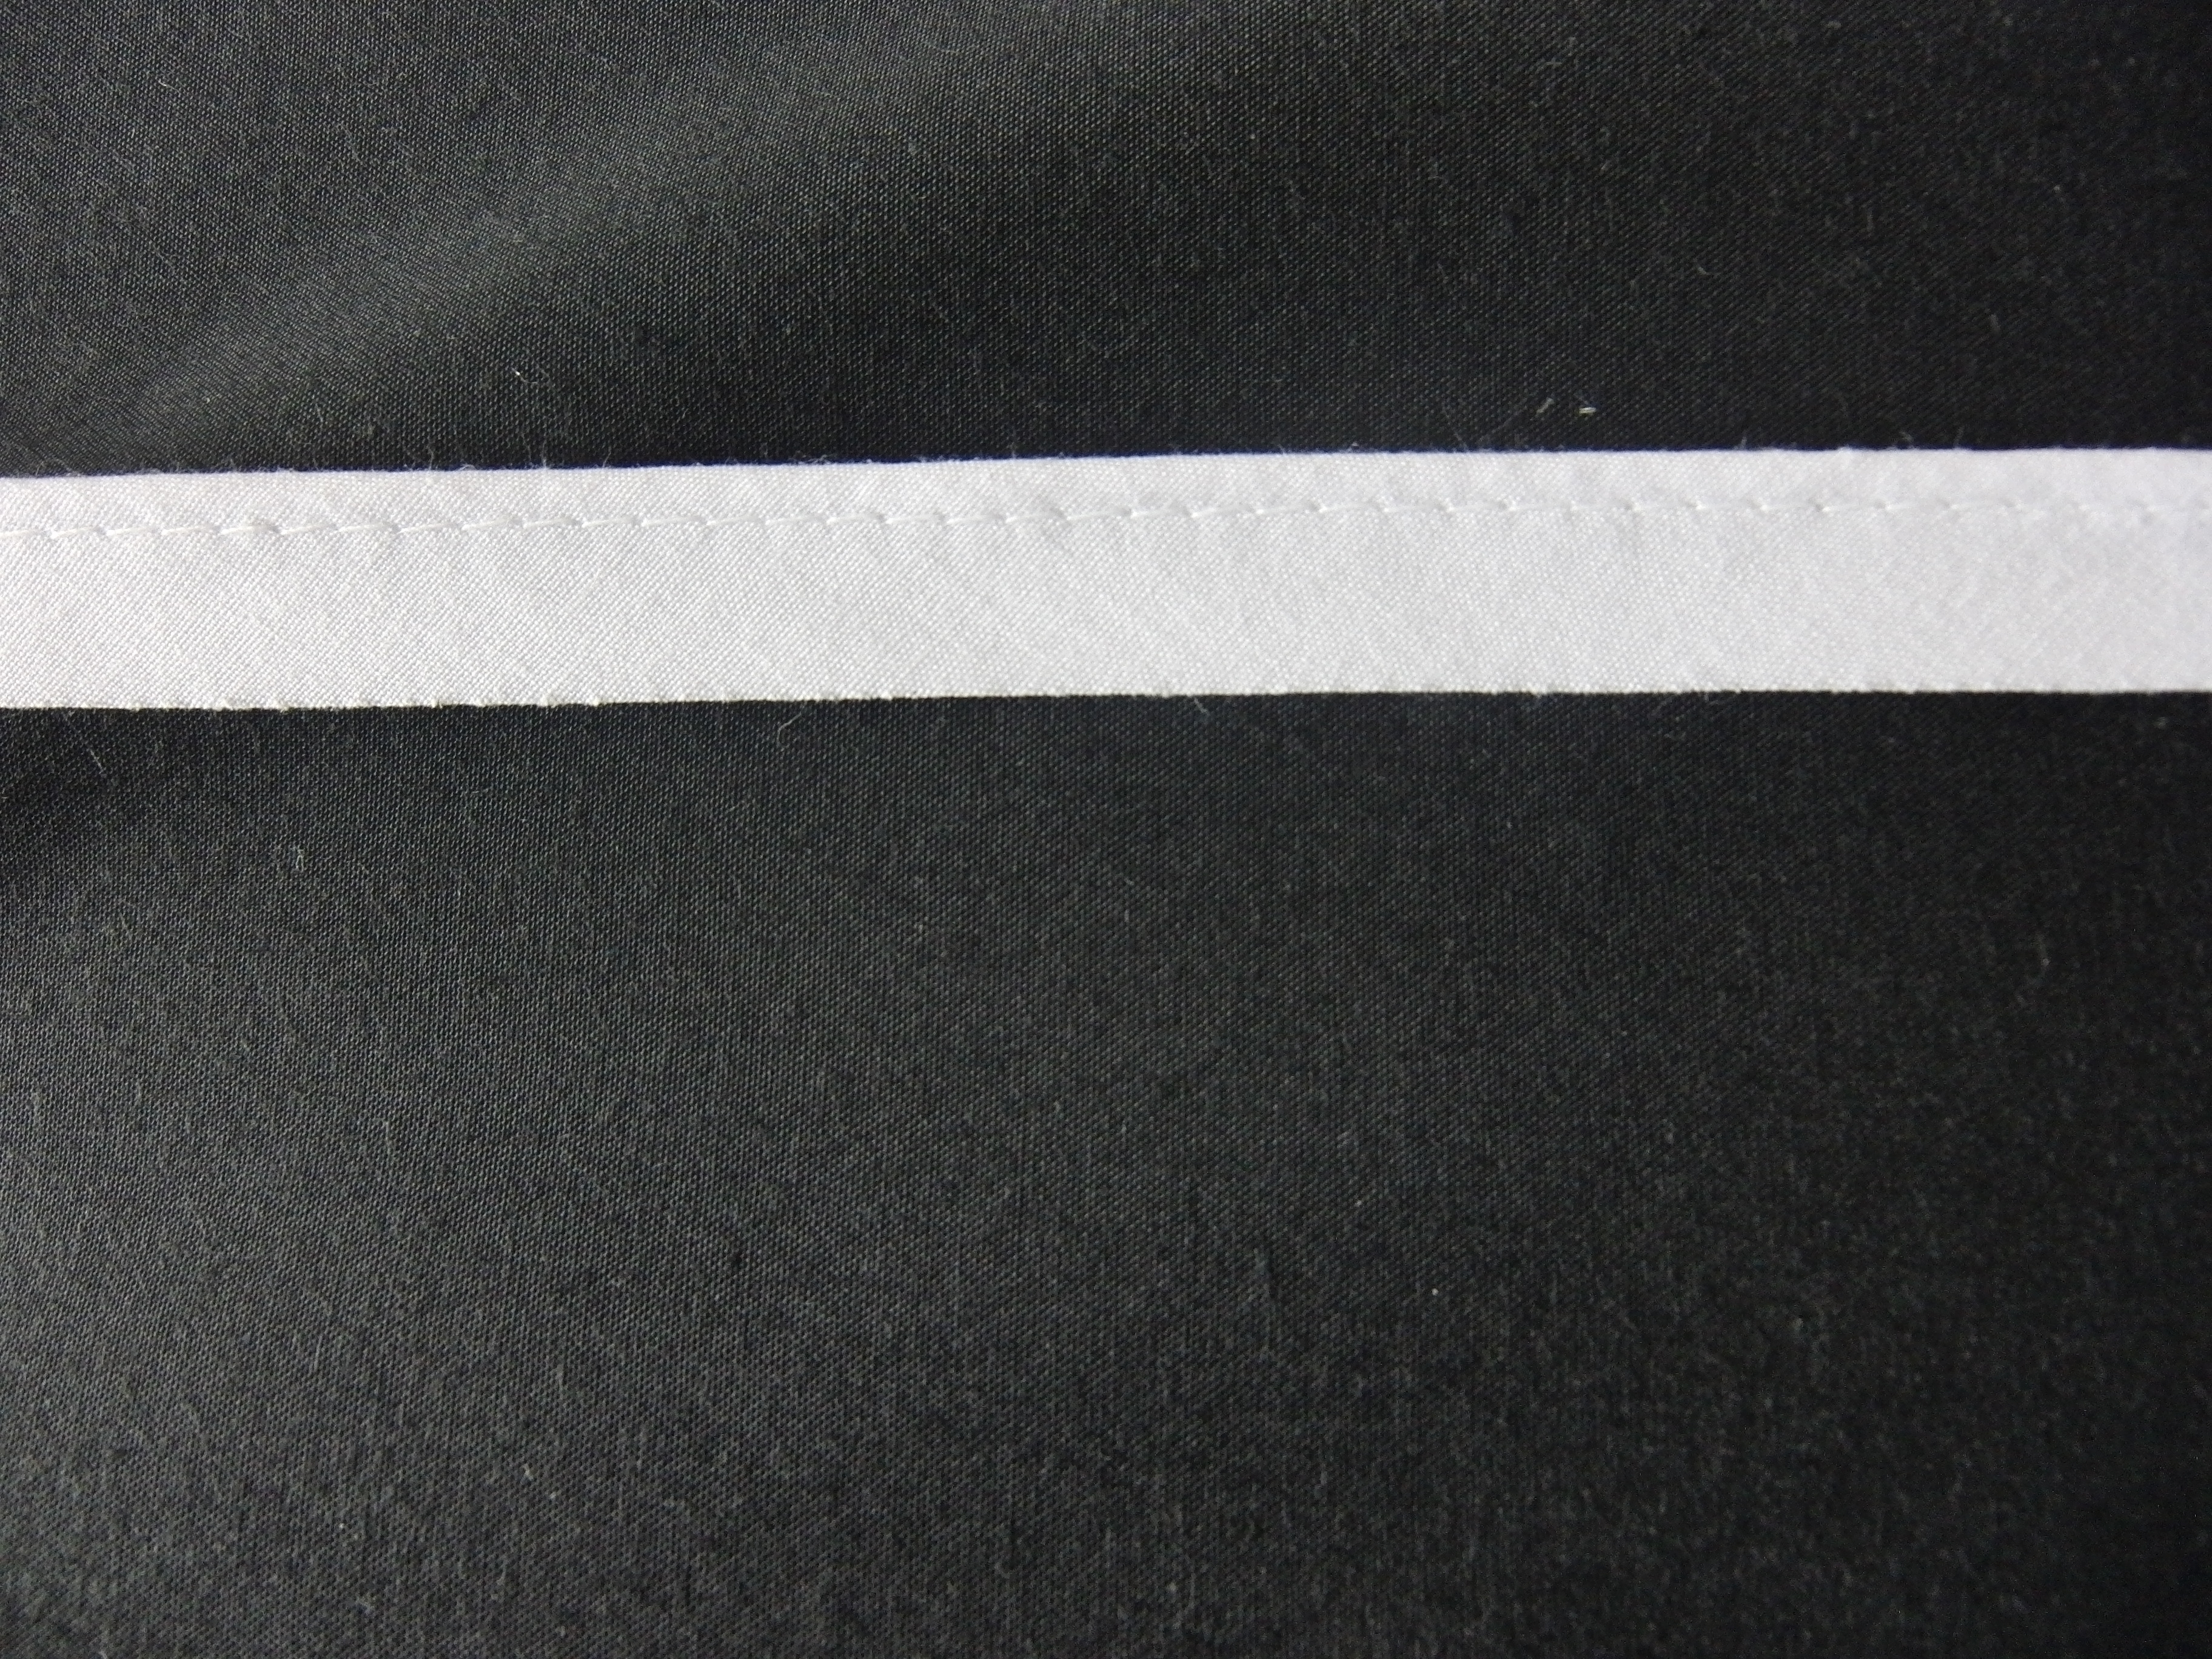 Kederband - Gewicht: 80 g/m² - Länge: 10 m - Breite: 15 mm - Farbe: weiß